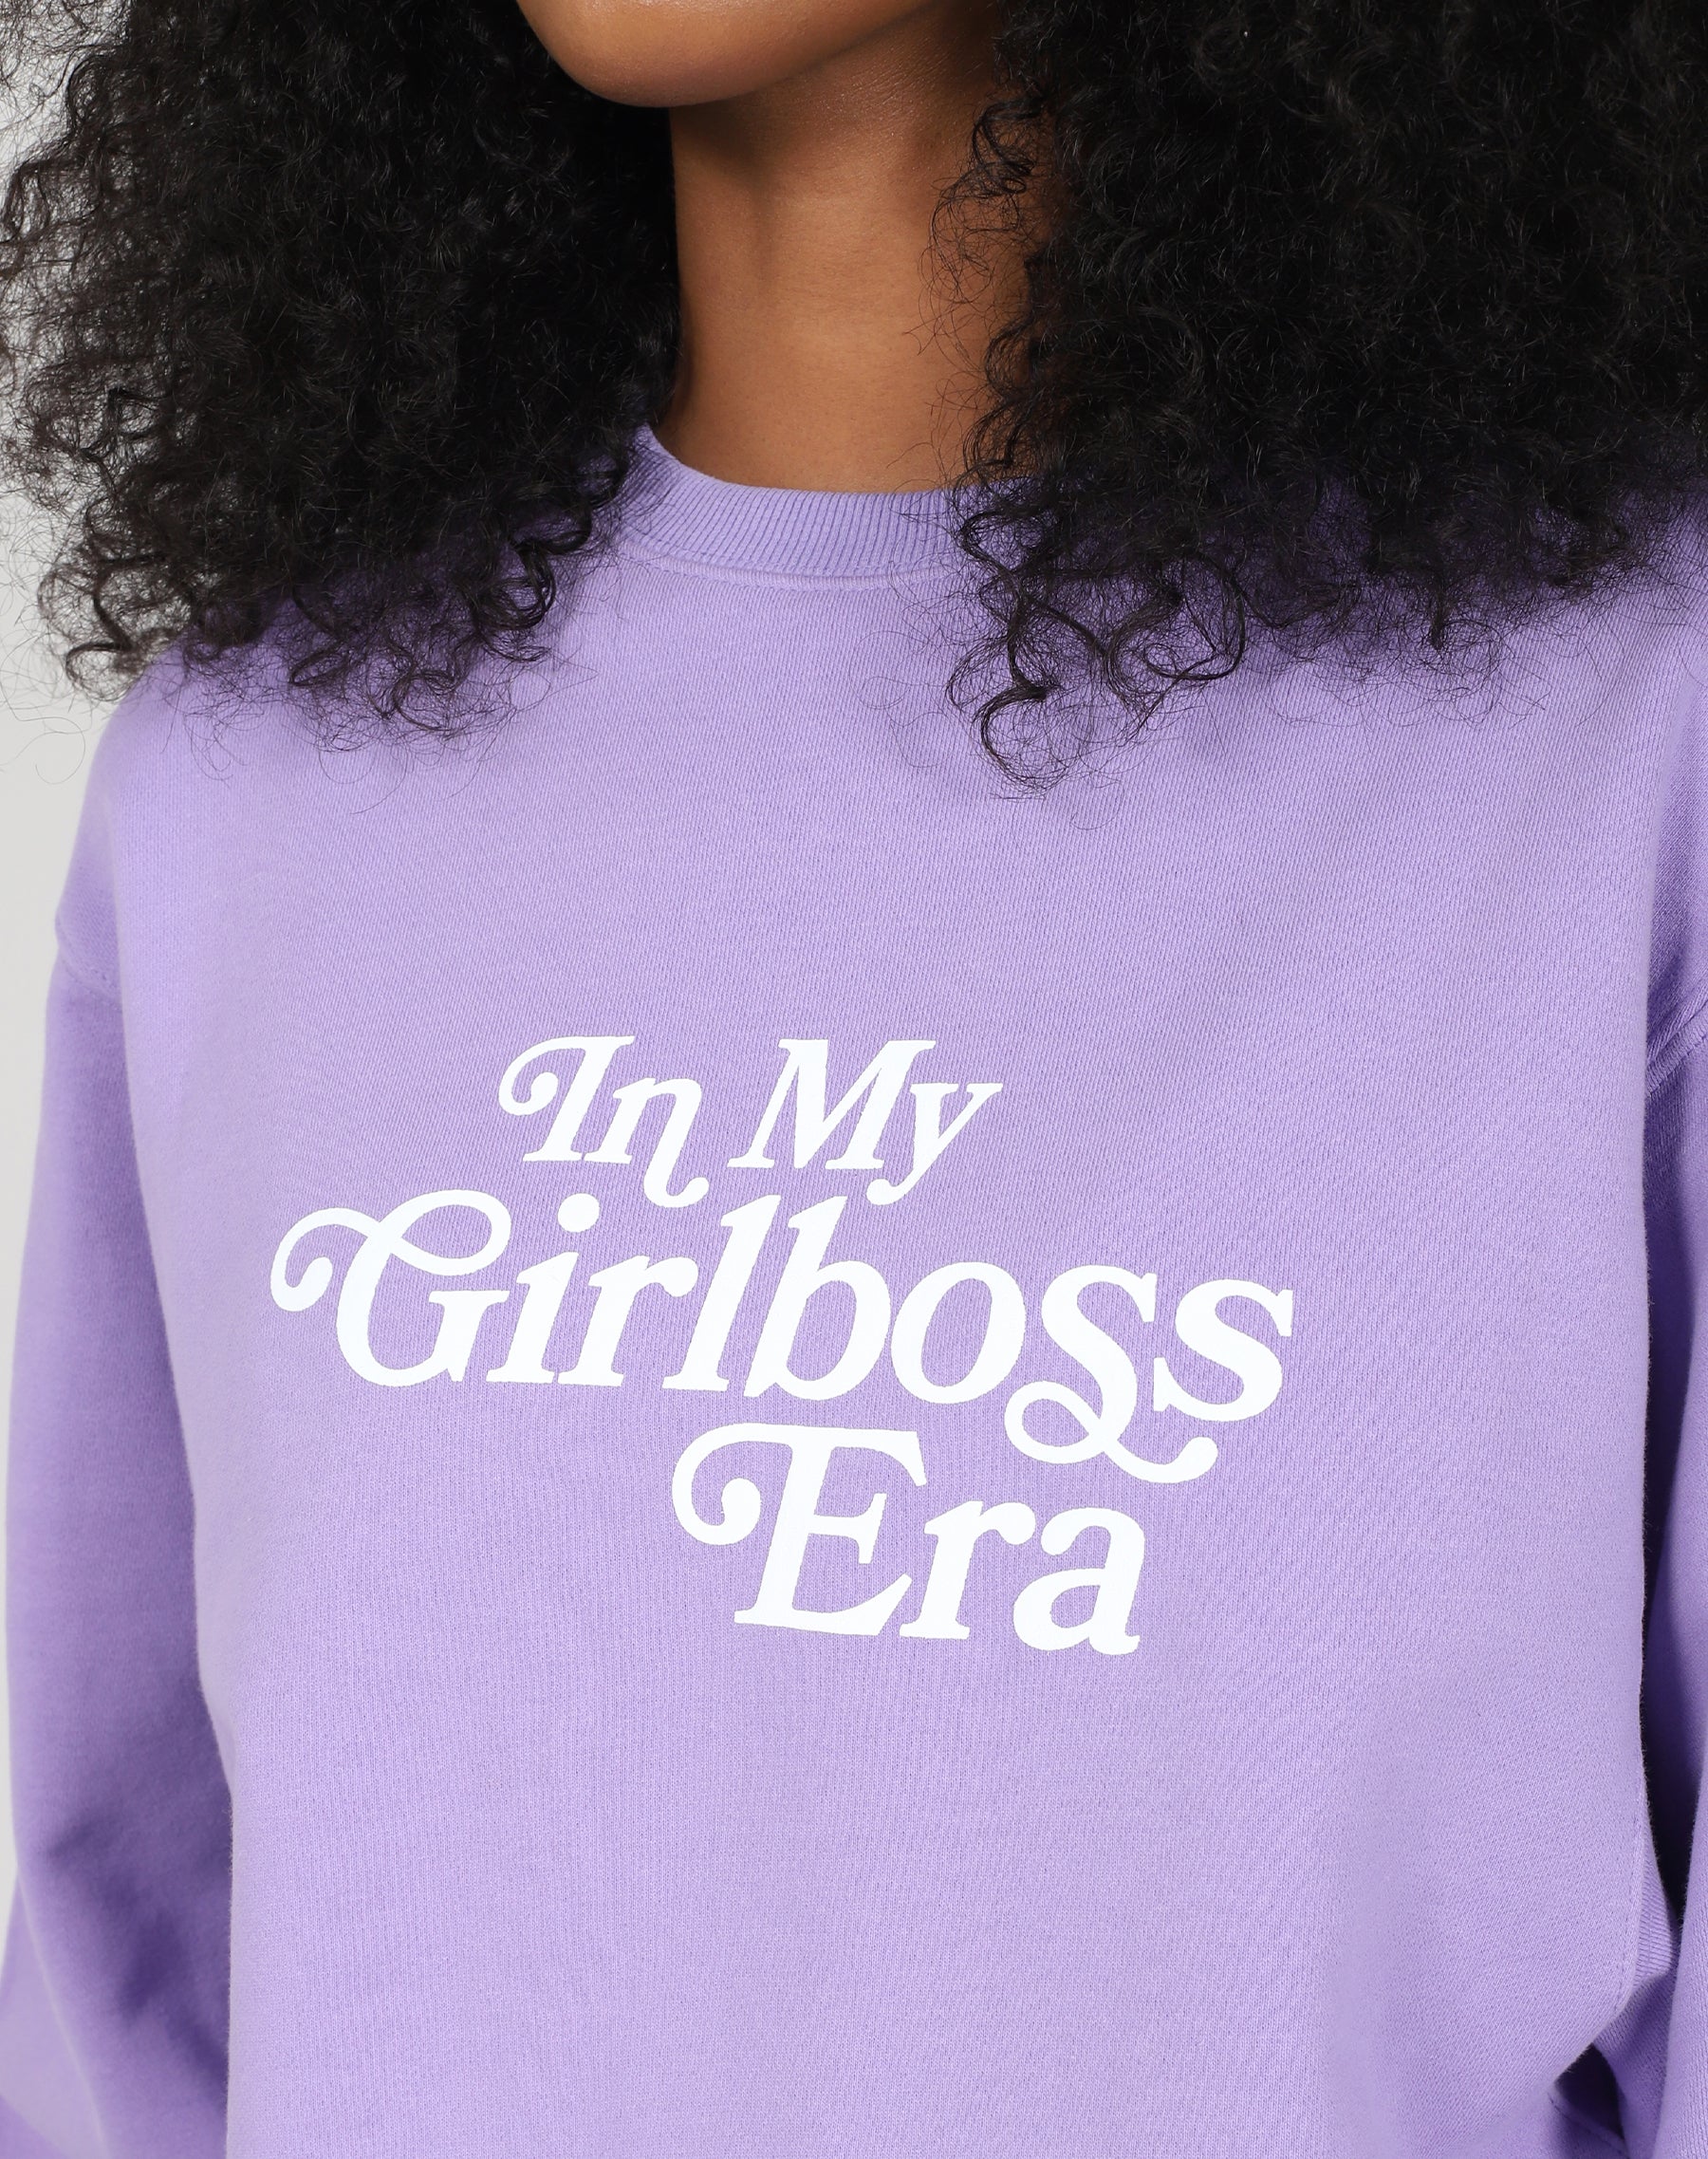 The "GIRLBOSS ERA" Best Friend Crew Neck Sweatshirt | Girlboss x Brunette the Label